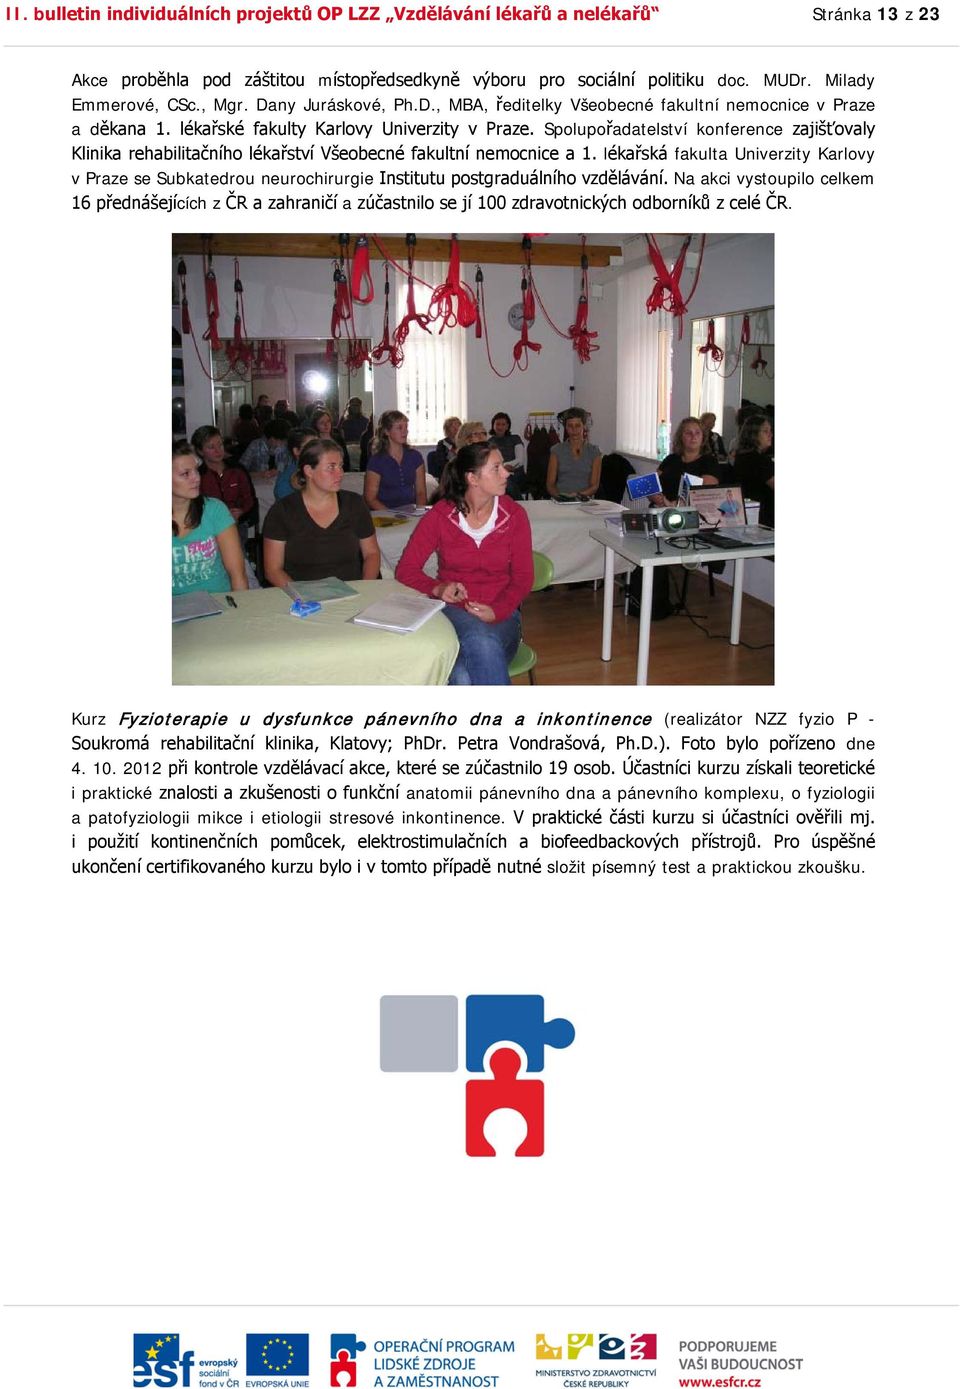 Spolupořadatelství konference zajišťovaly Klinika rehabilitačního lékařství Všeobecné fakultní nemocnice a 1.